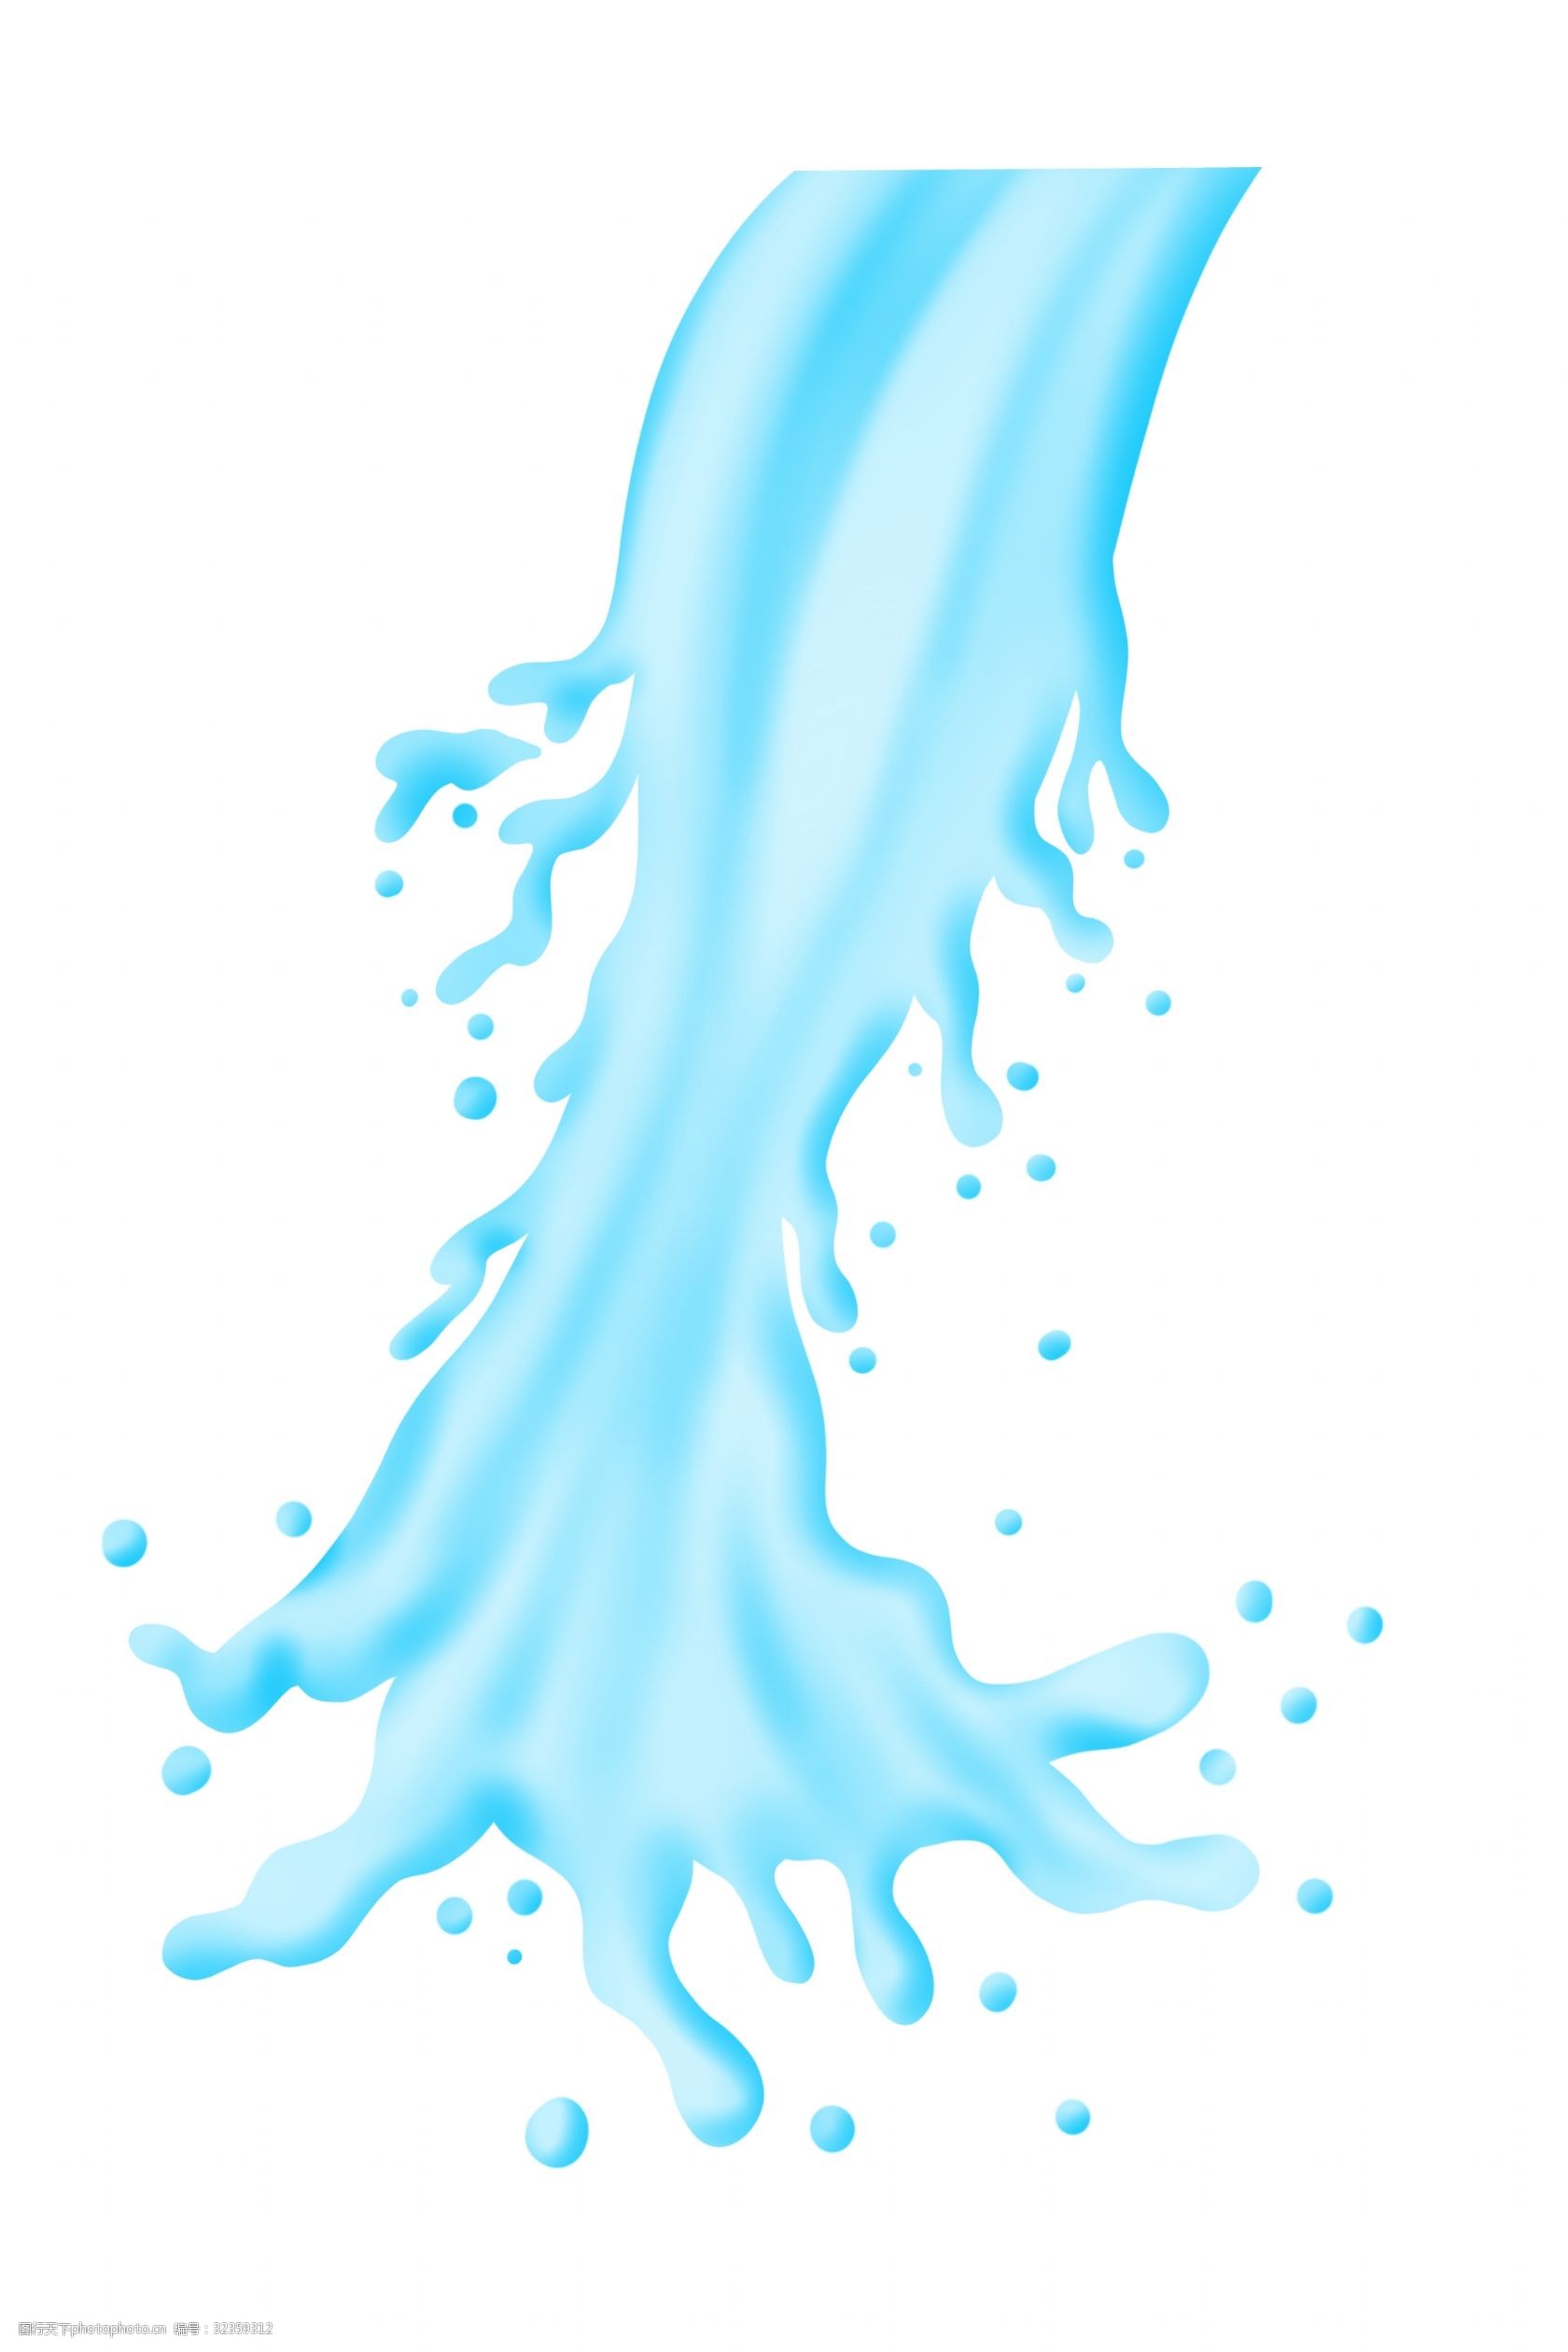 关键词:倒出的飞溅液体插画 大量倒出液体 溅射的液体 卡通液体插画